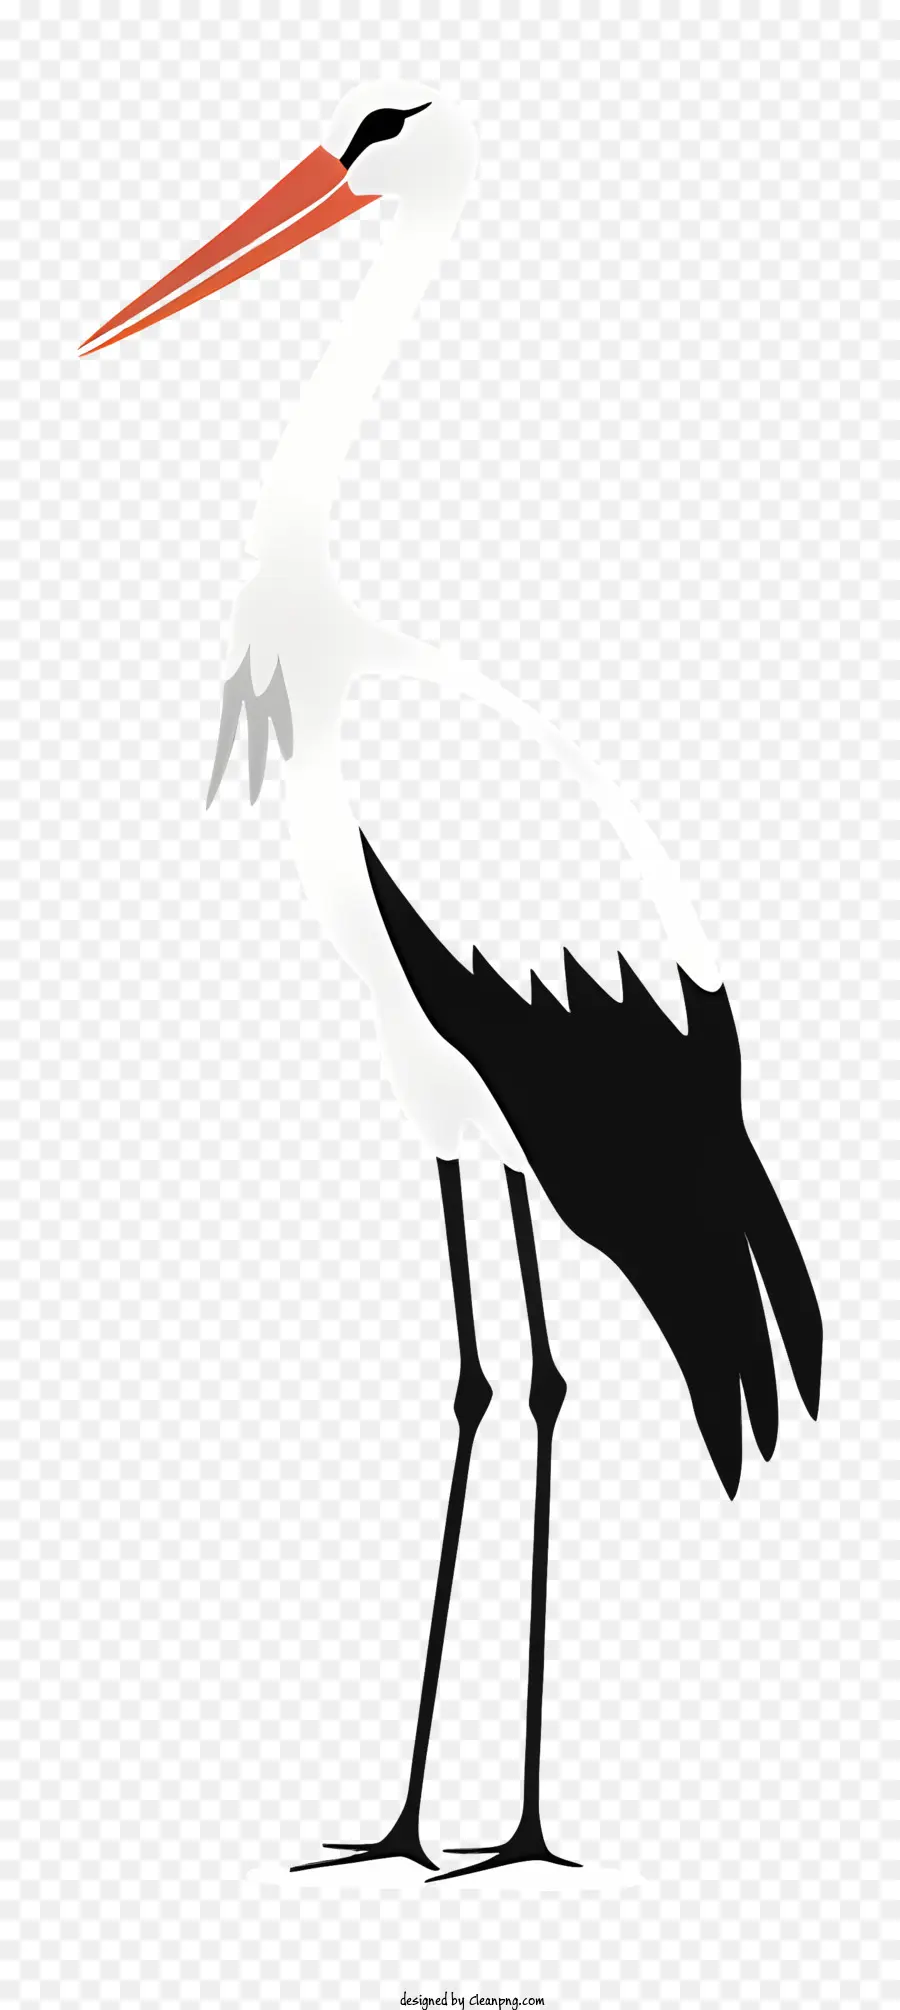 con cò trắng cò động vật hoang dã con chim thiên nhiên - Cò đen và trắng với đôi cánh lây lan